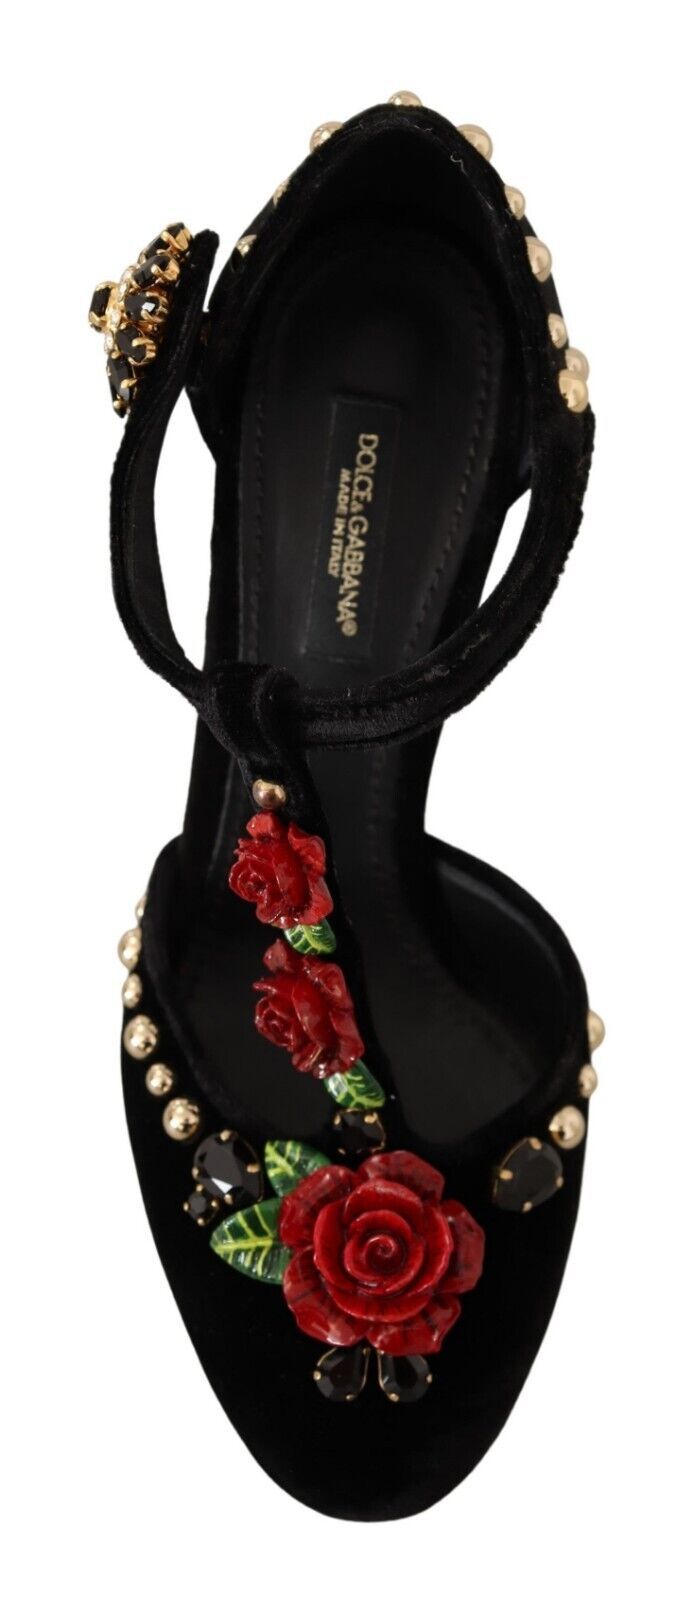 Dolce & Gabbana Elegant Velvet T-Strap Mary Jane Pumps